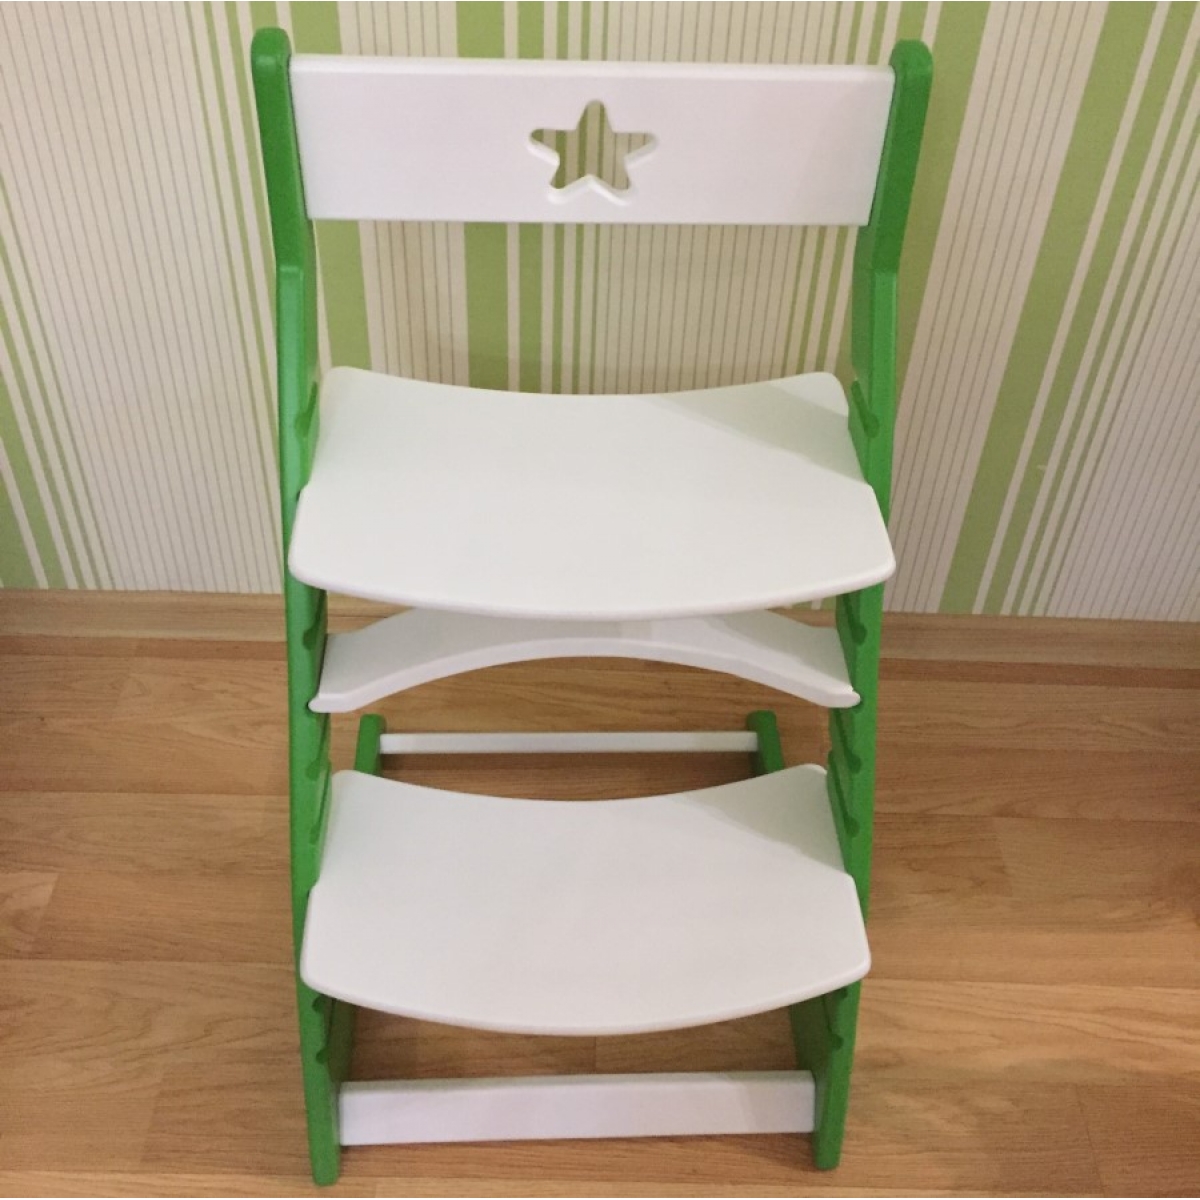 Детский растущий регулируемый стул Ростик/Rostik (бело-зеленый)